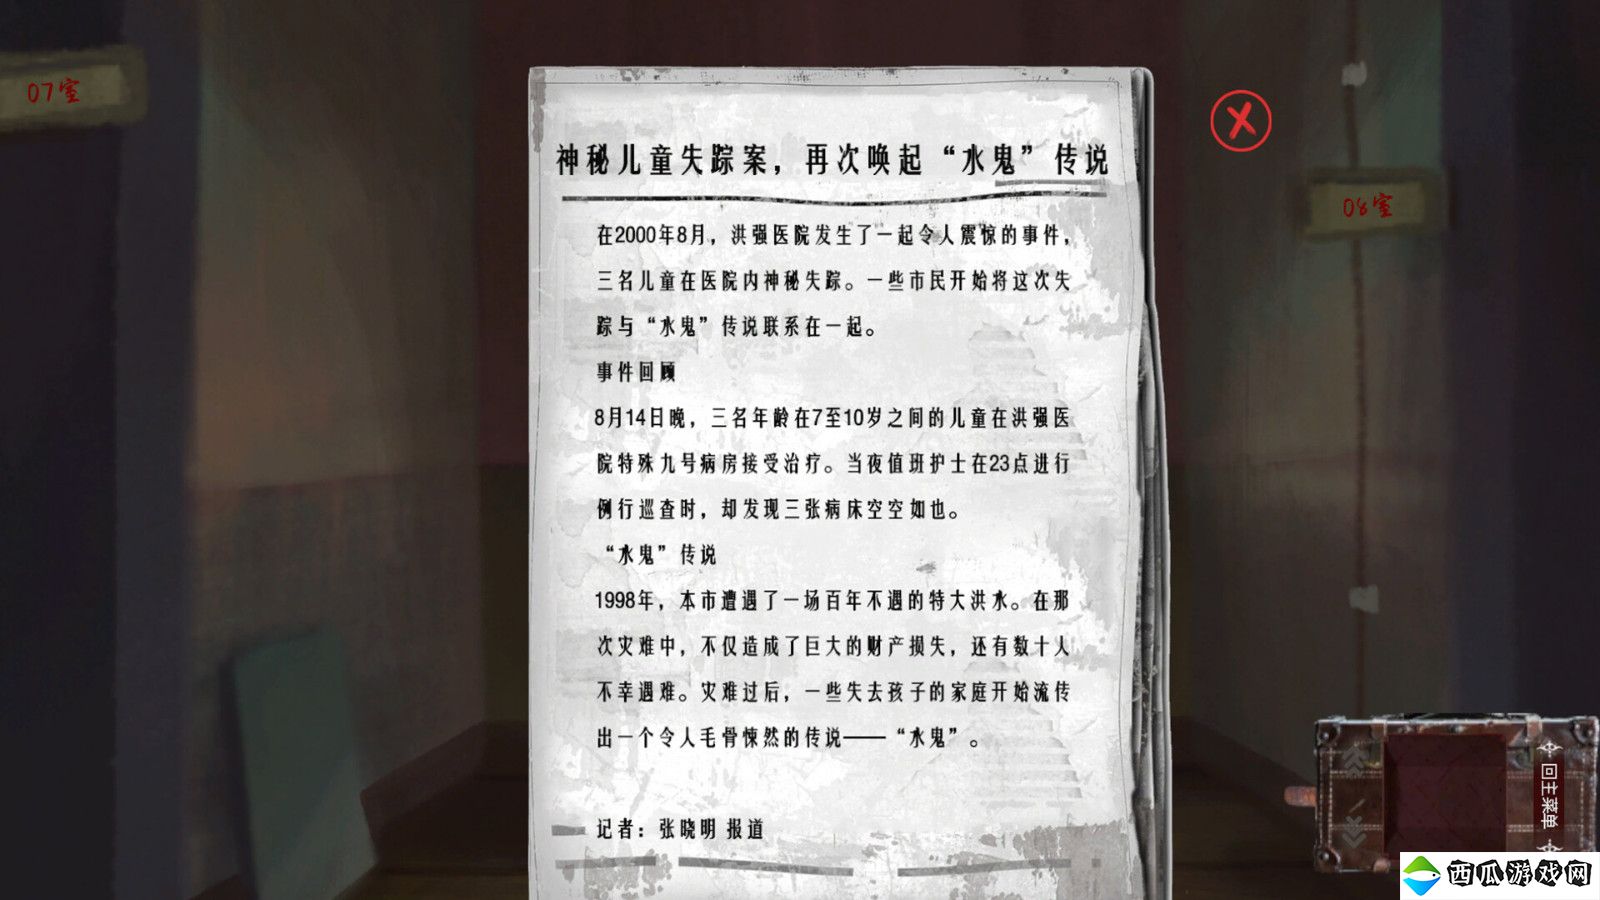 中式悬疑恐怖点击解谜AVG游戏《水鬼》Steam页面上线 支持简体中文